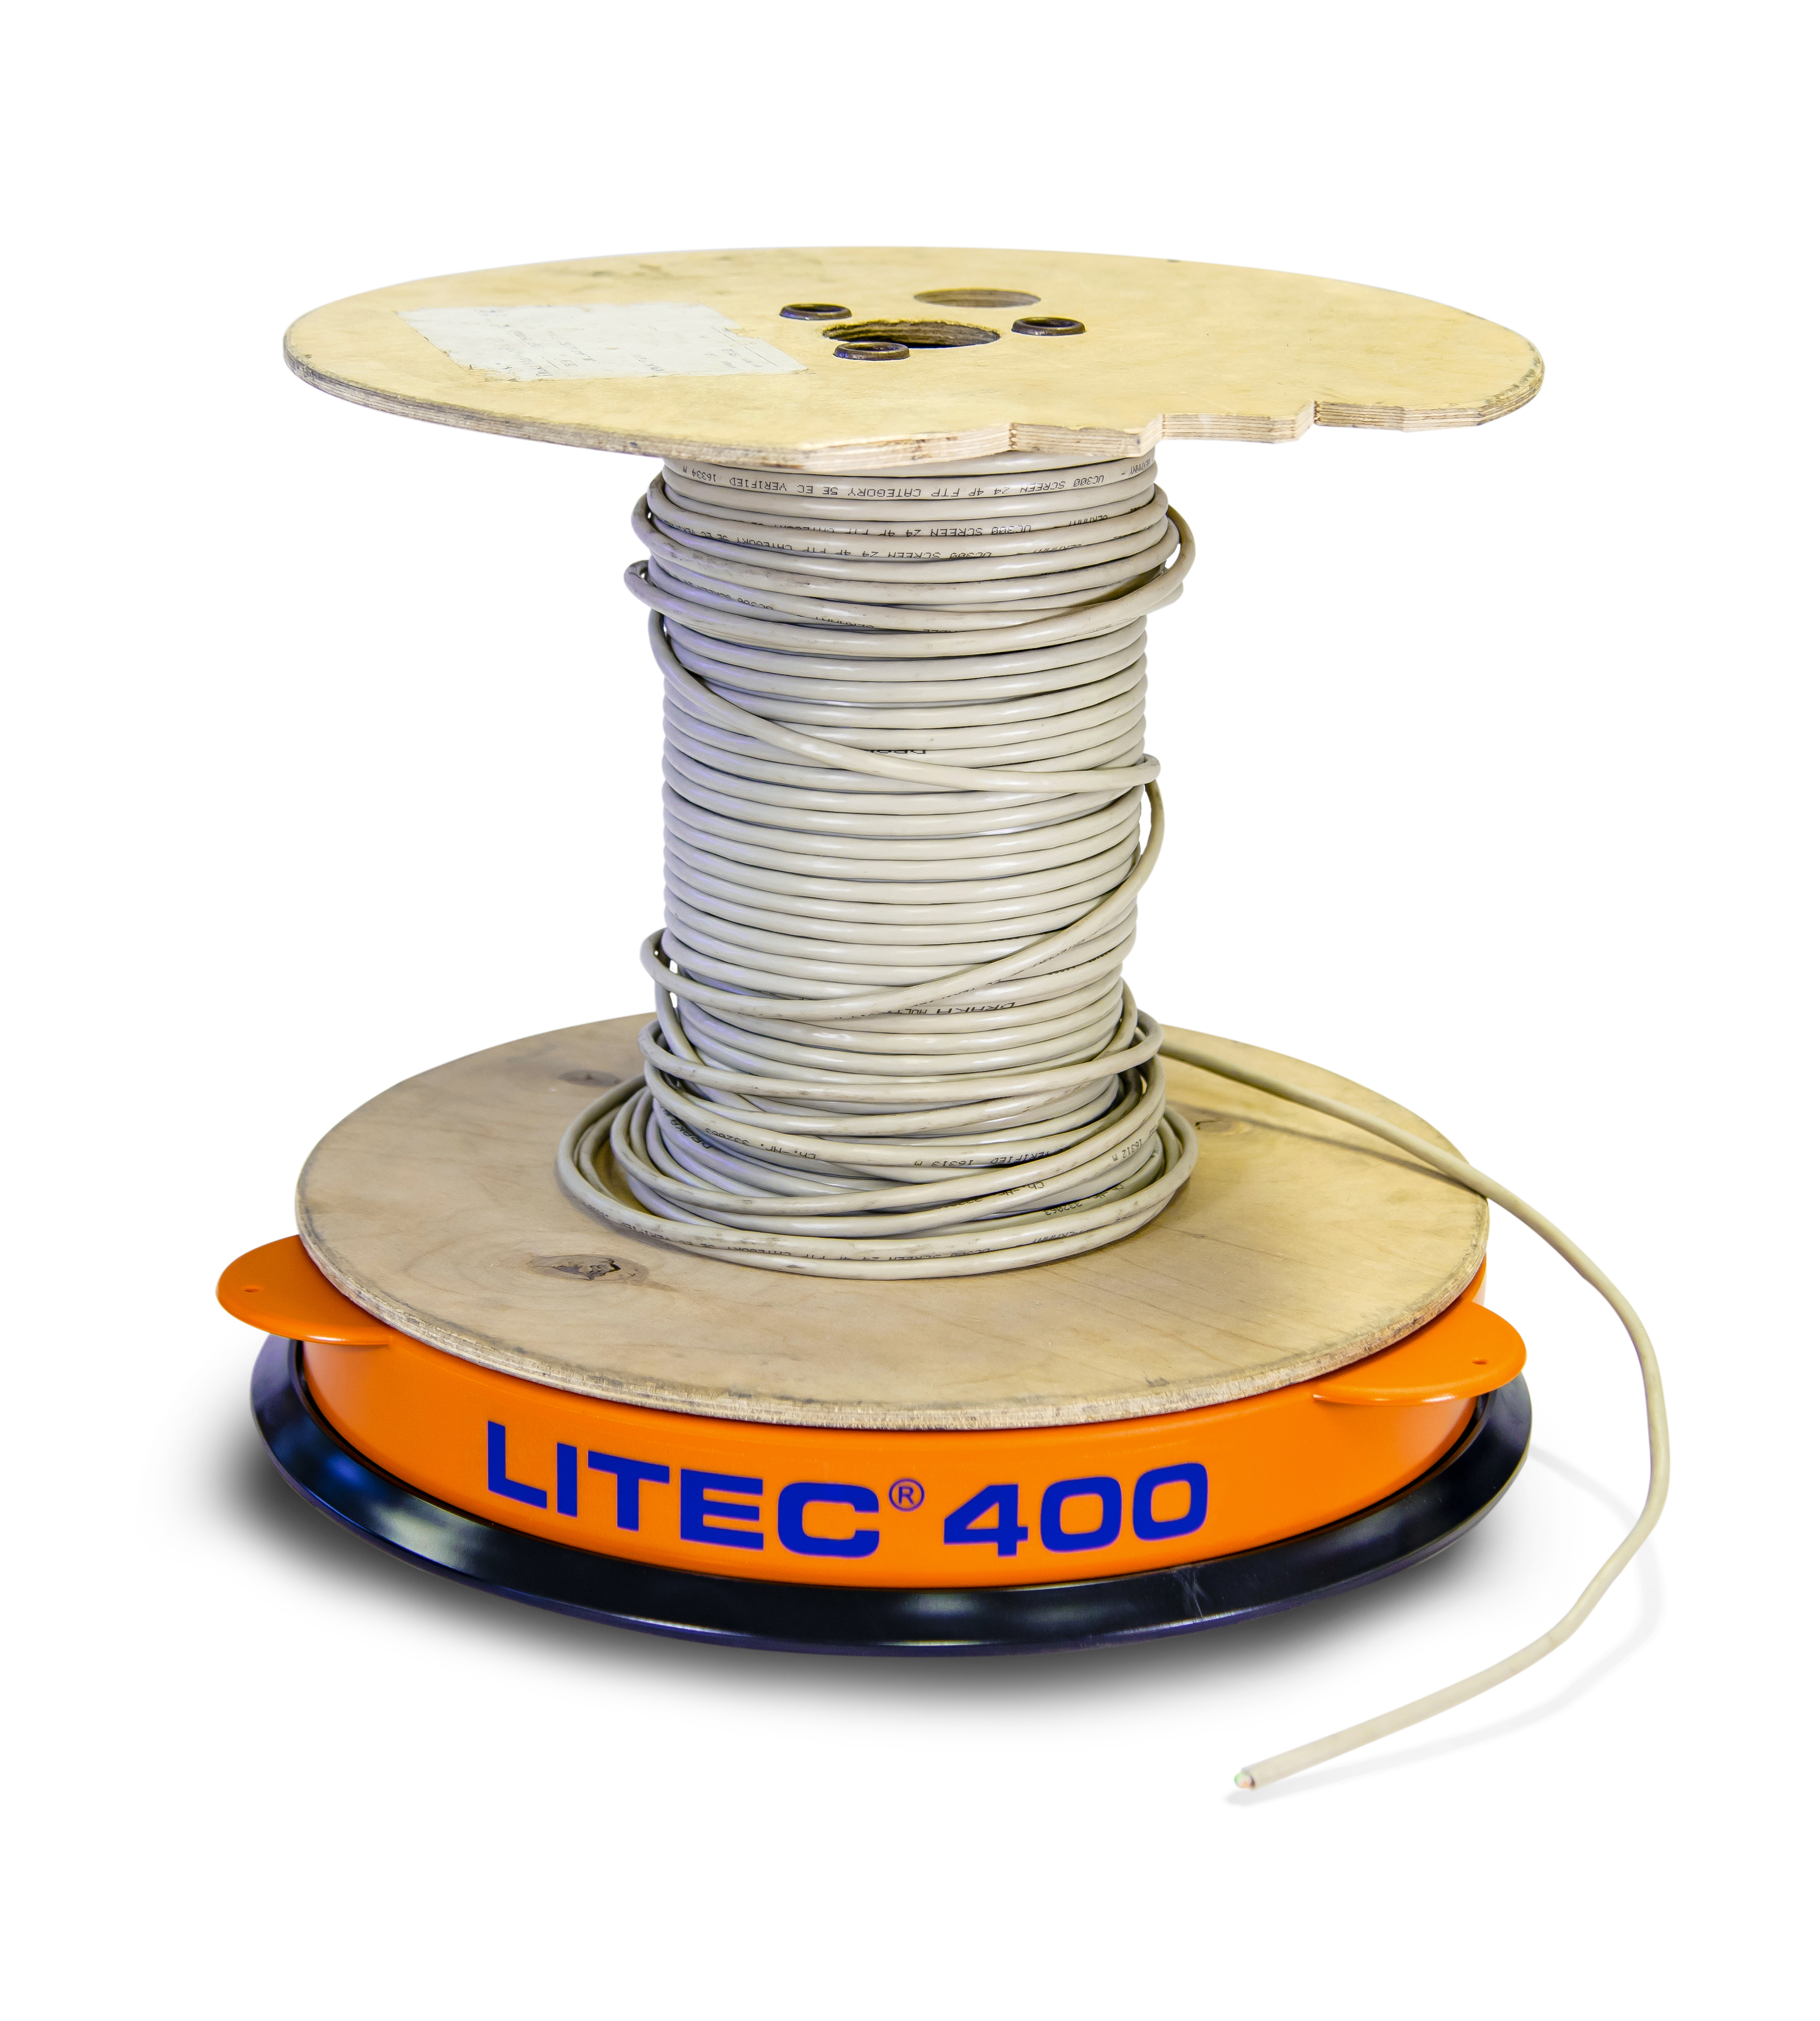 LITEC 400